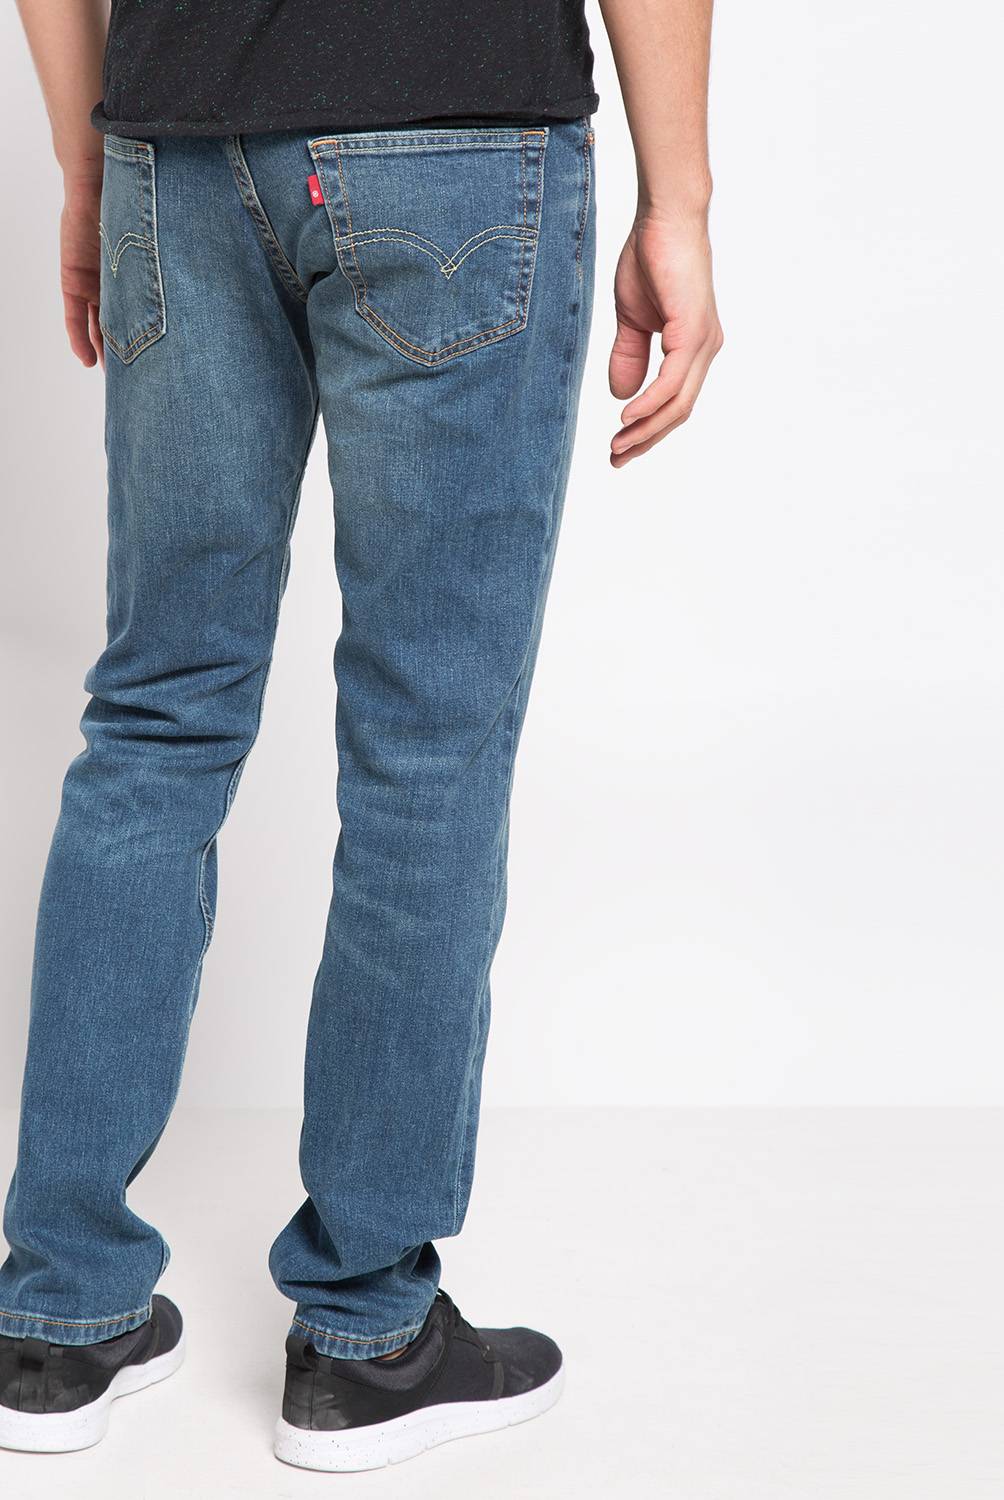 LEVIS - Jeans 511 Hombre